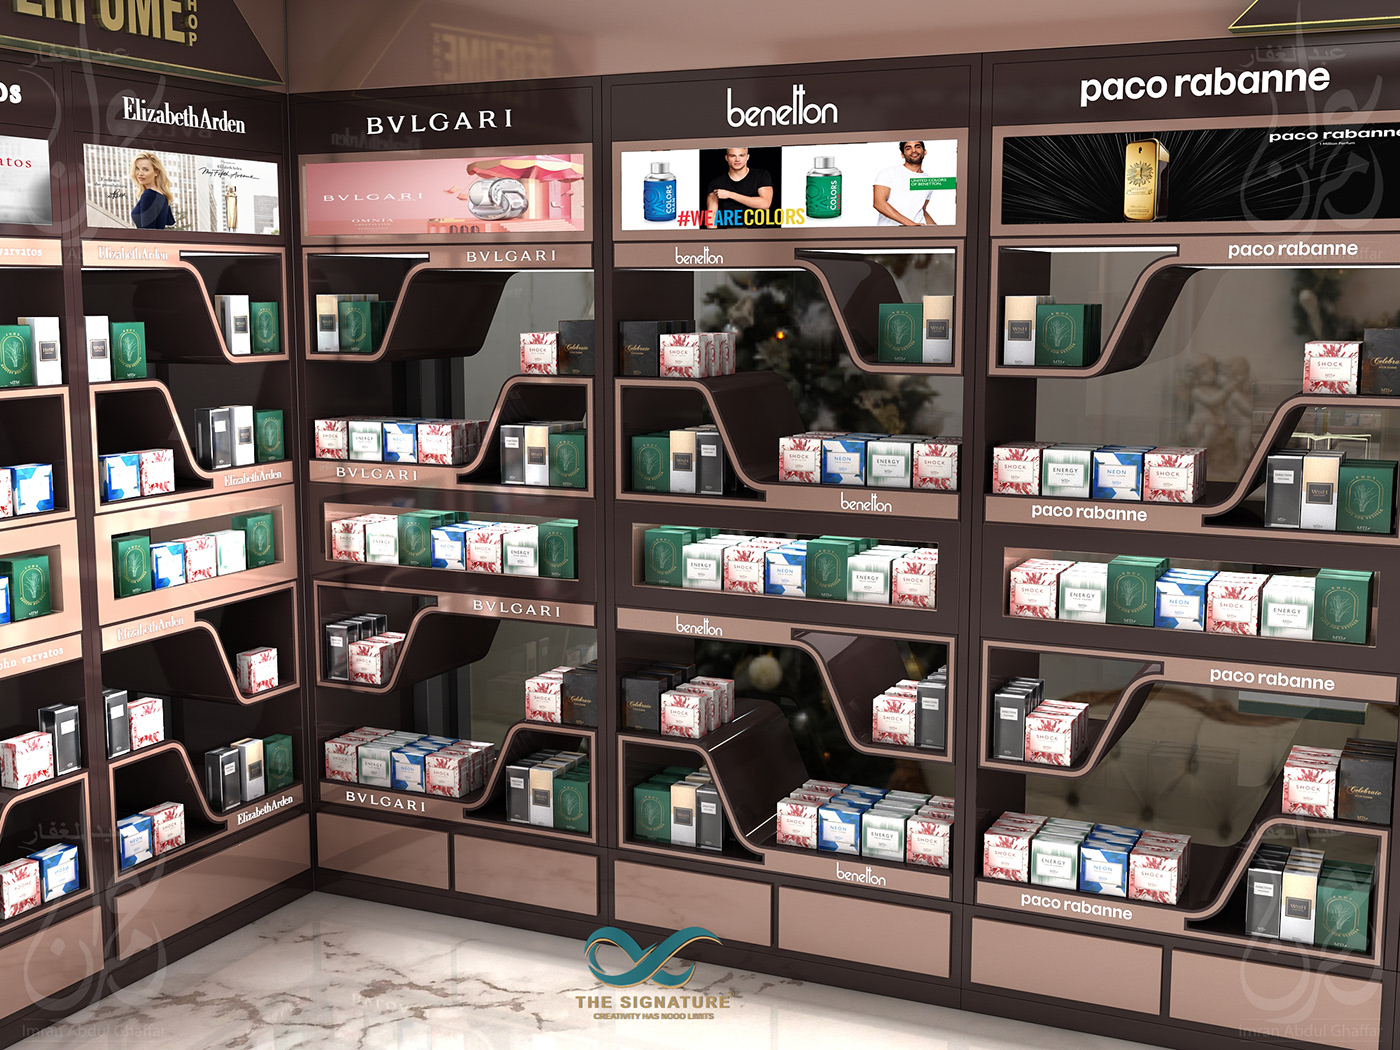 perfume display shelf design interior design  shop fragrances display mallshop OUTLETDESIGN Shelves design